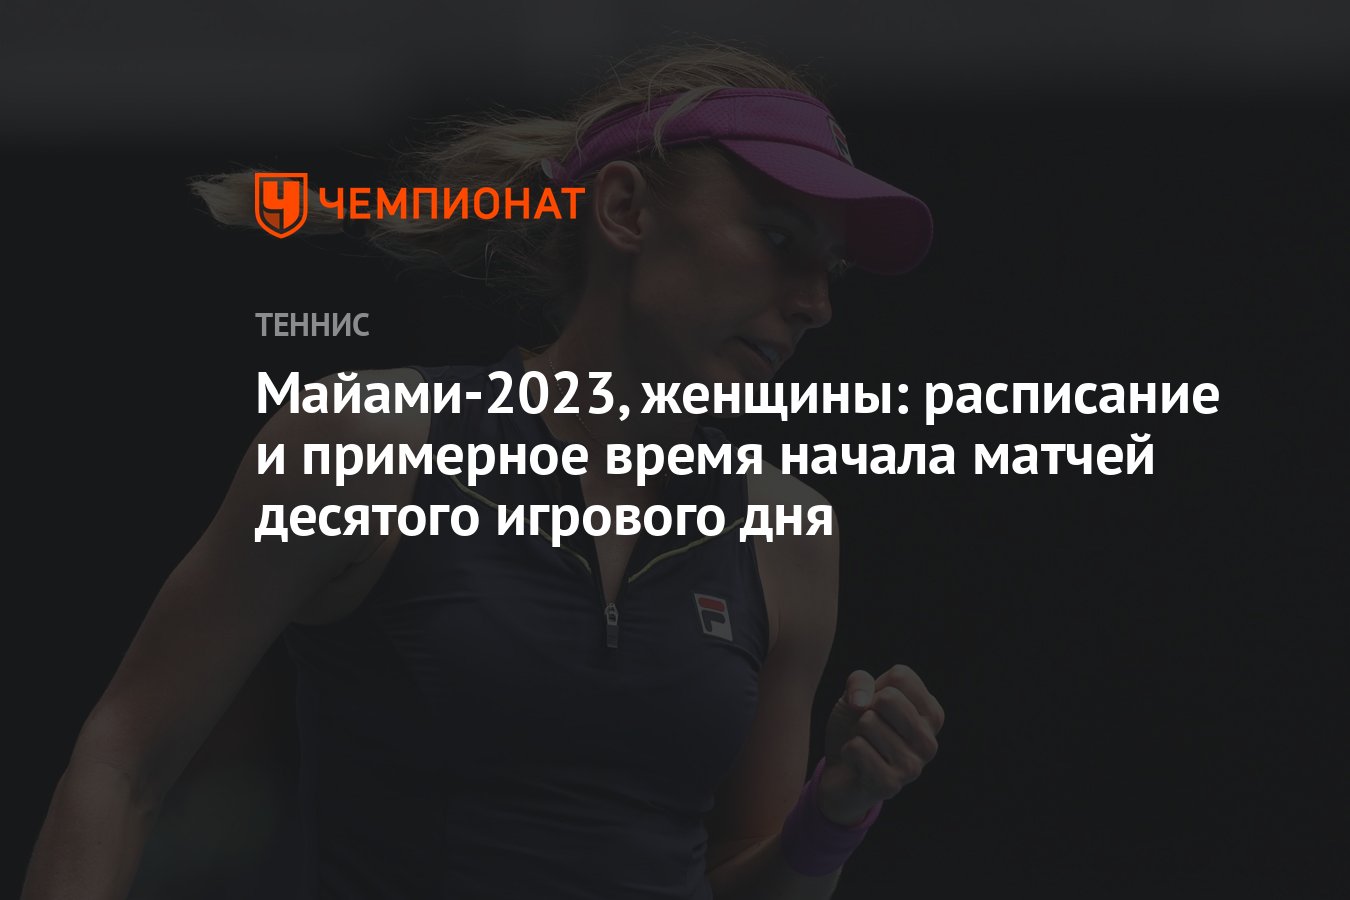 Теннис 2023 женщины рейтинги. Расписание женщины. Петра Квитова. Петра Квитова Майами 2023.